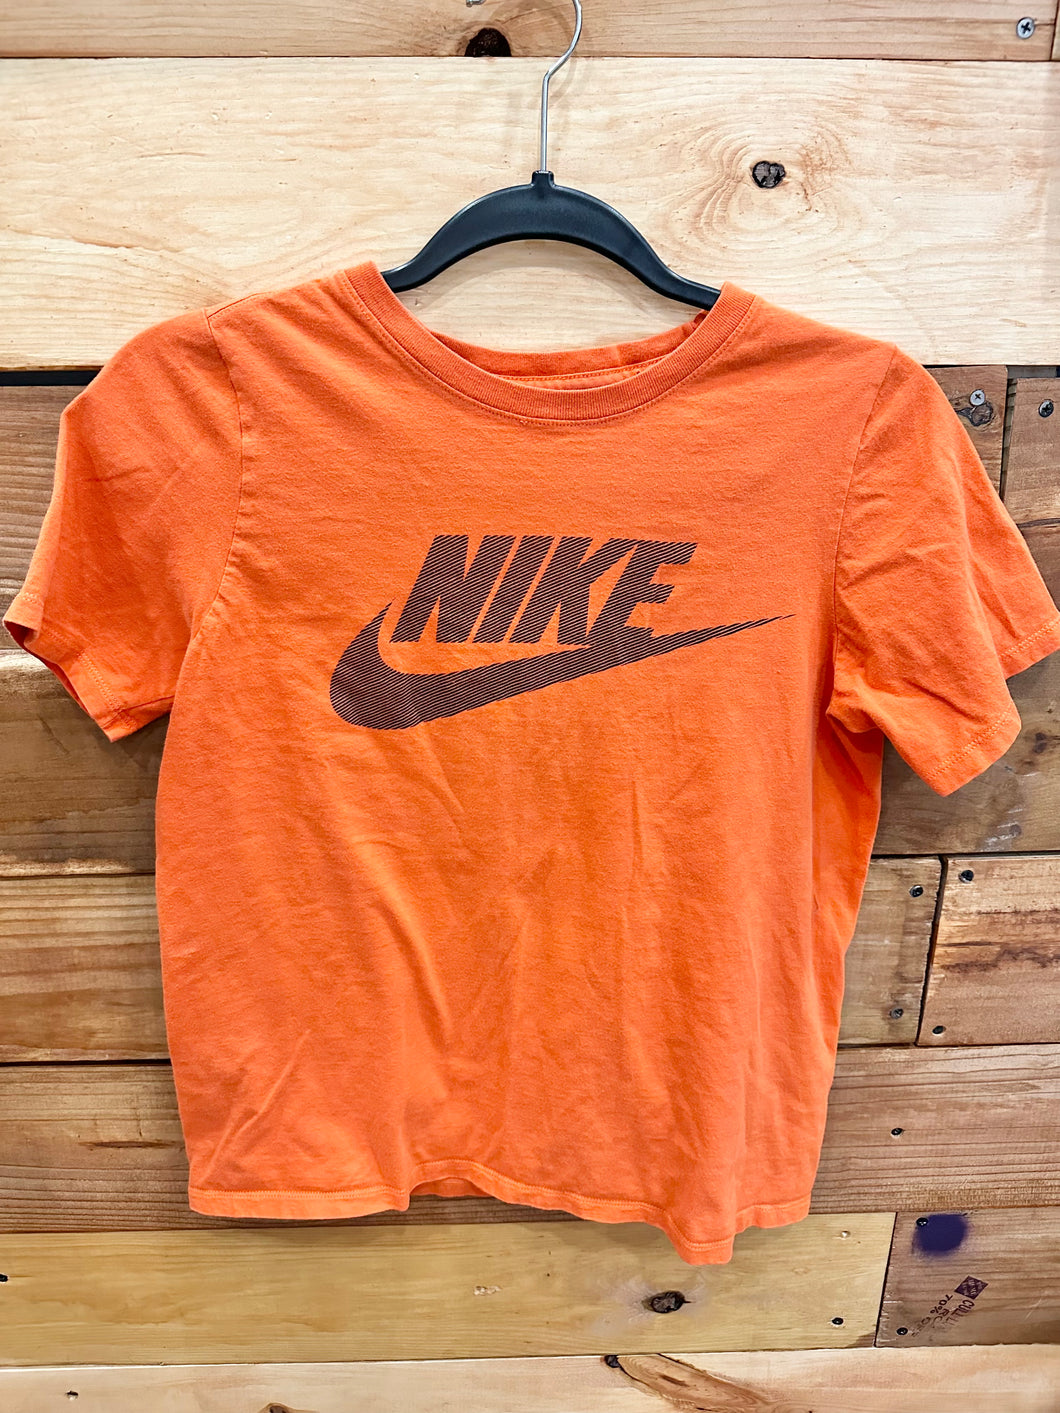 Nike Orange Shirt Size 14-16